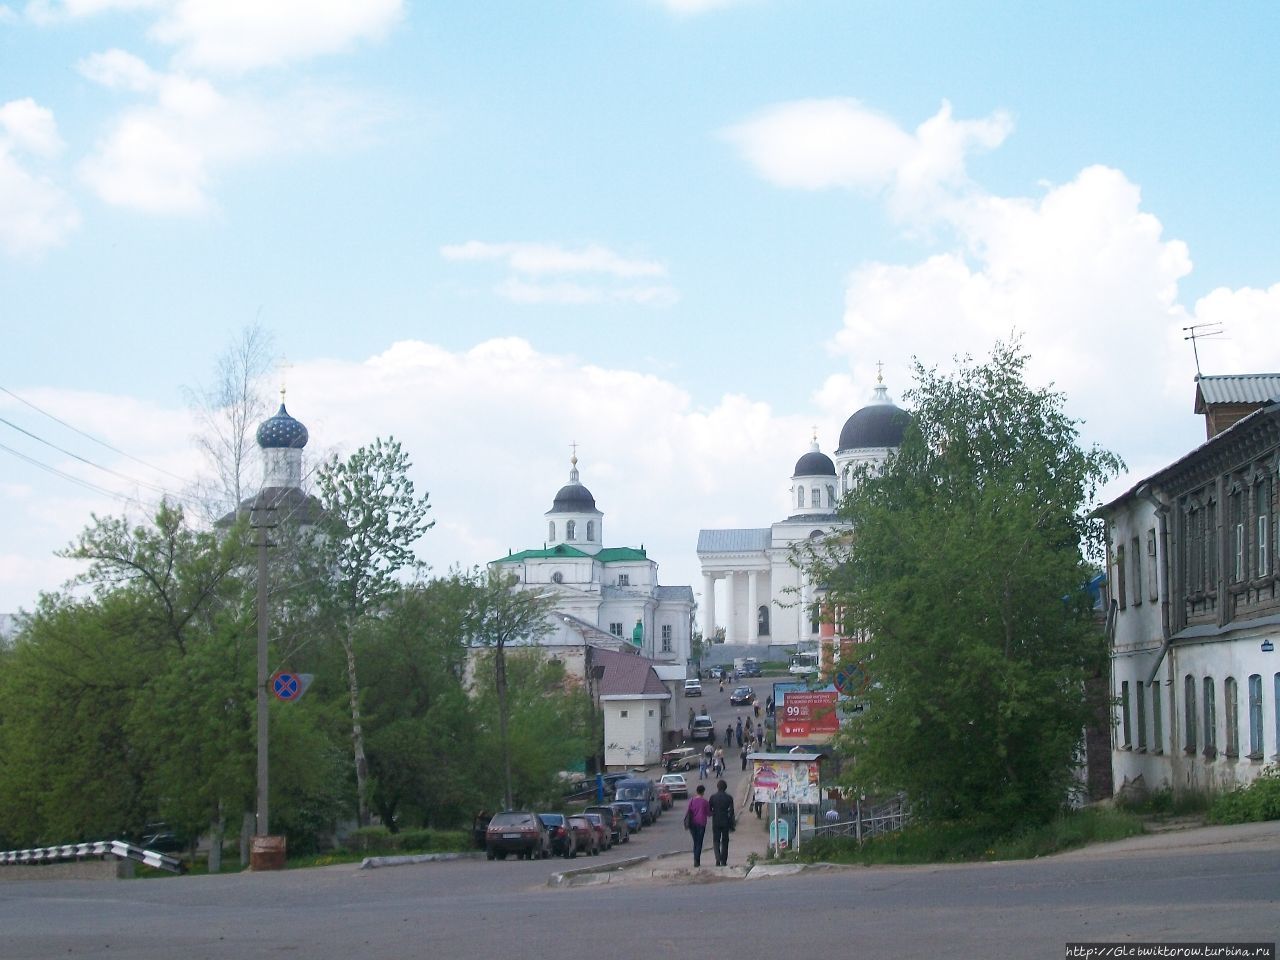 Прогулка по историческому центру Арзамас, Россия